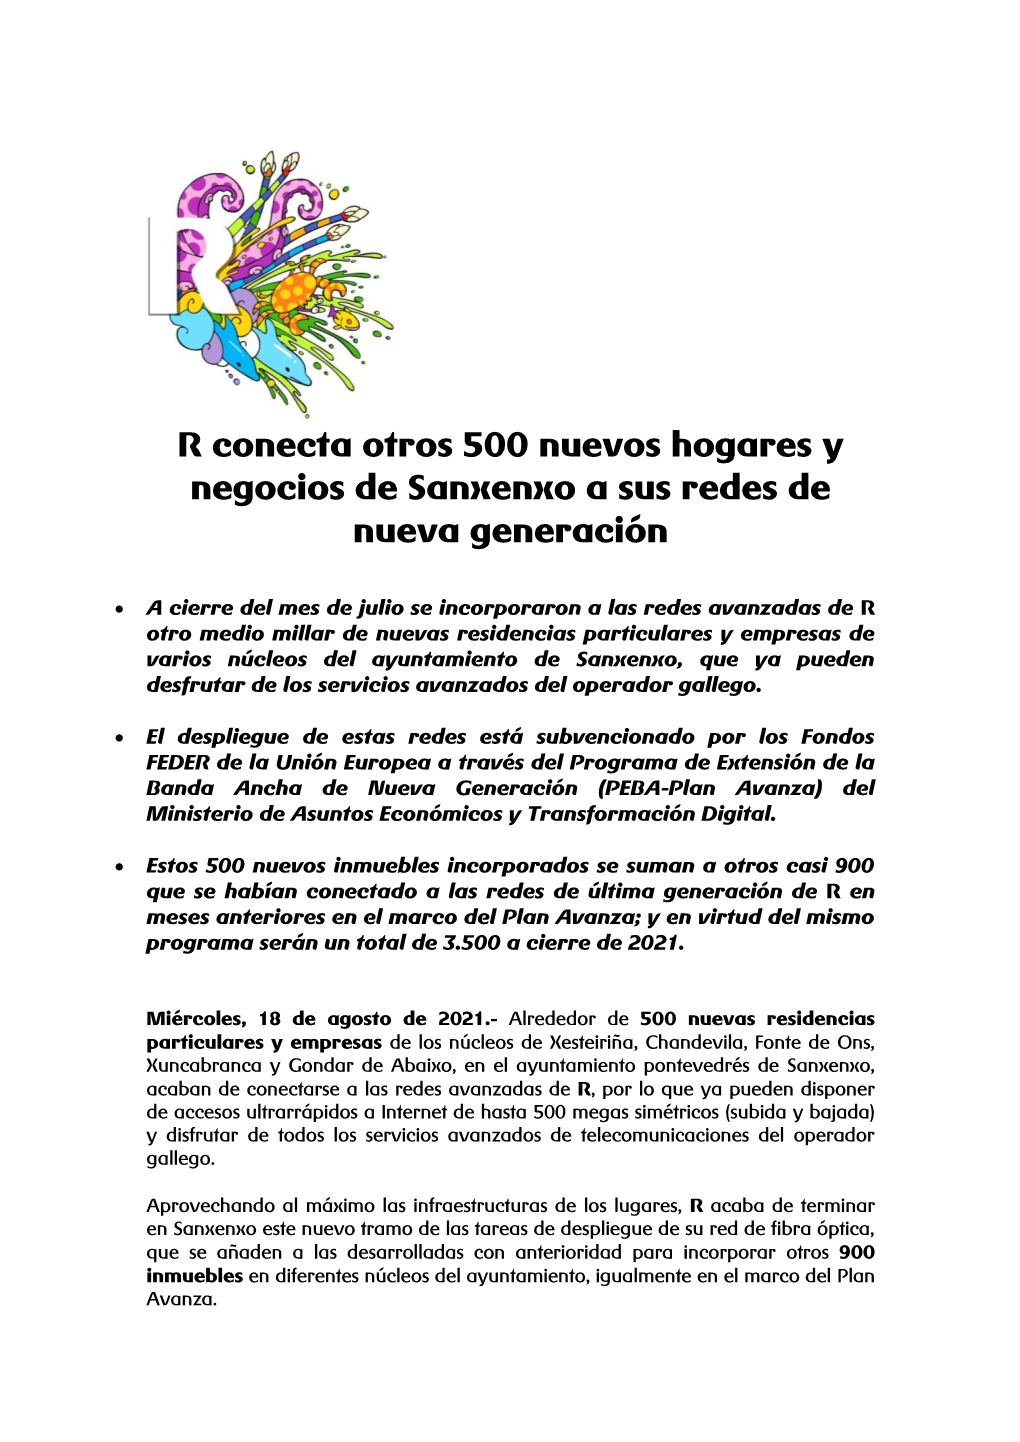 R Conecta Otros 500 Nuevos Hogares Y Negocios De Sanxenxo a Sus Redes De Nueva Generación